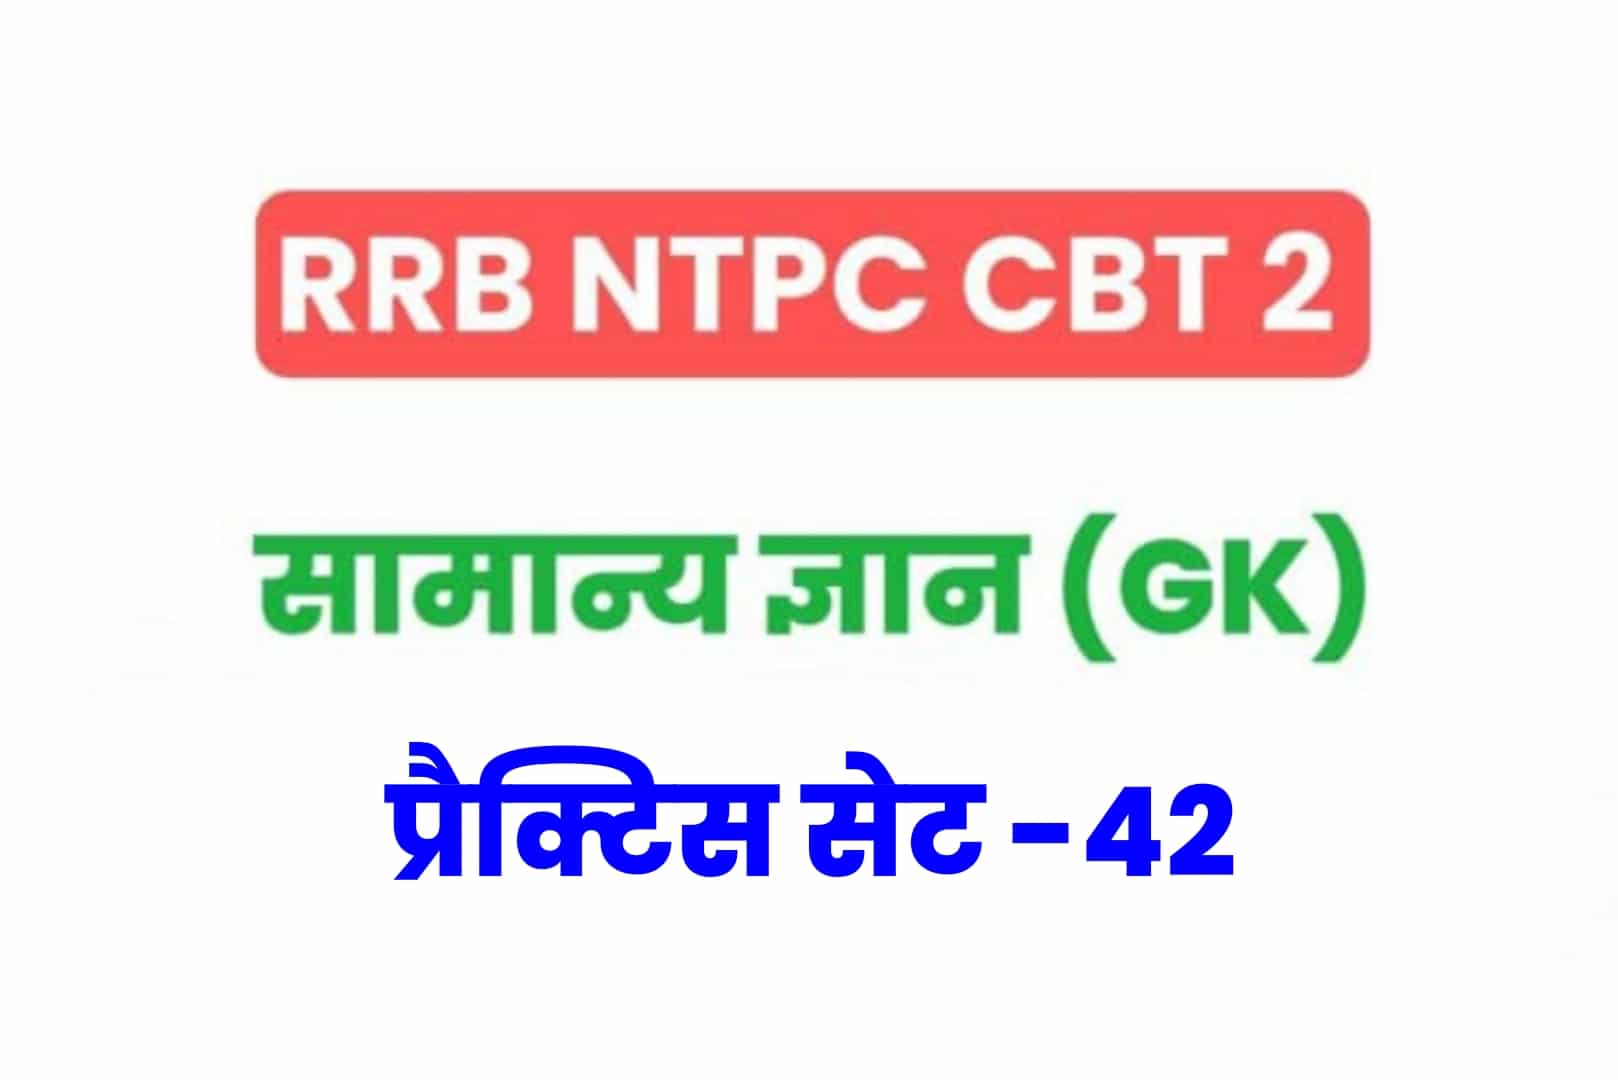 RRB NTPC CBT 2 GK प्रैक्टिस सेट 42: परीक्षा में जानें से पूर्व अवश्य पढ़ें सामान्य ज्ञान के 25 मुख्य MCQ